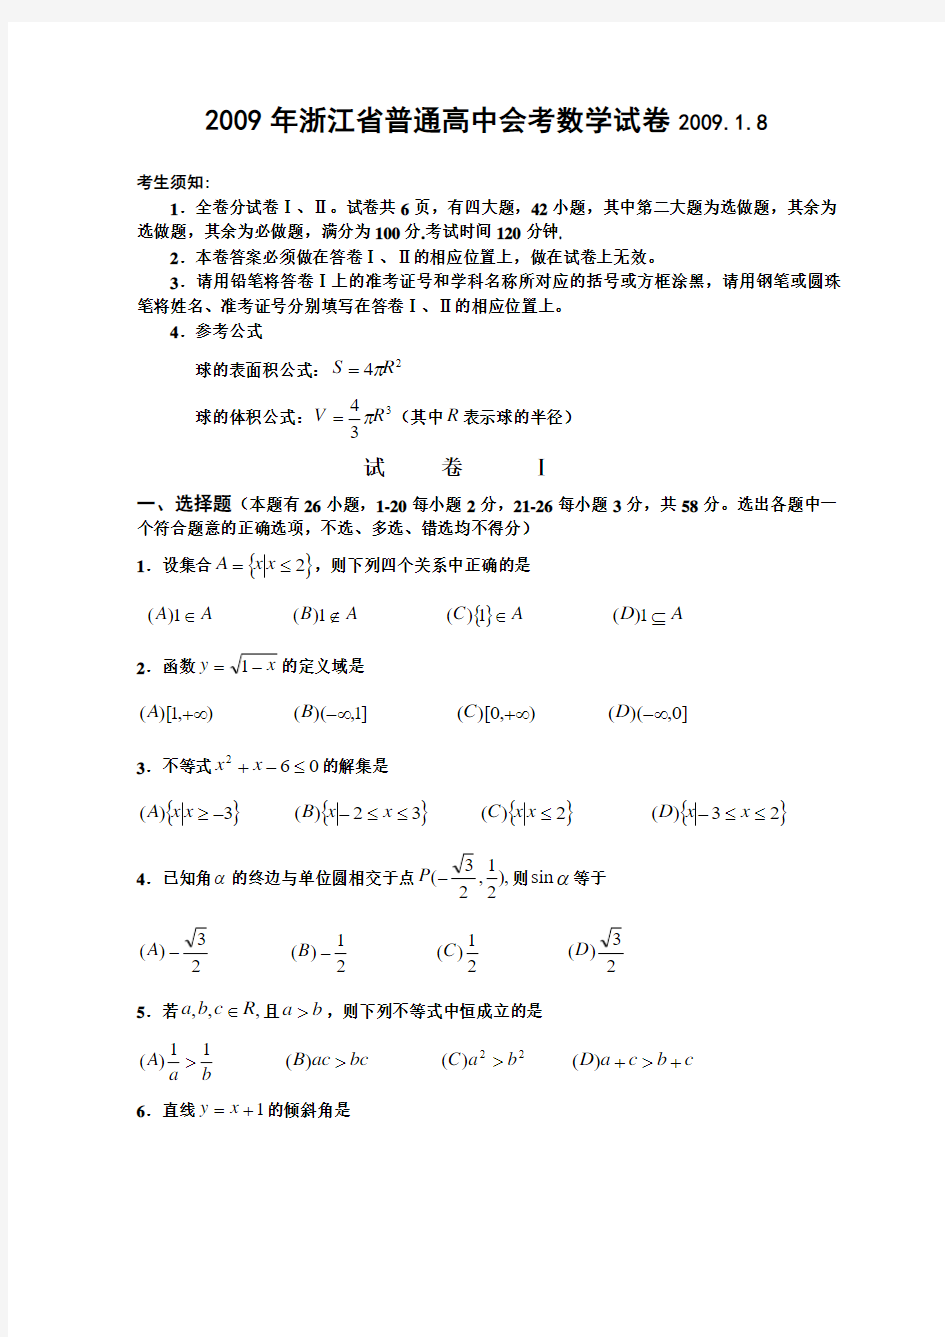 普通高中会考数学试卷(1)